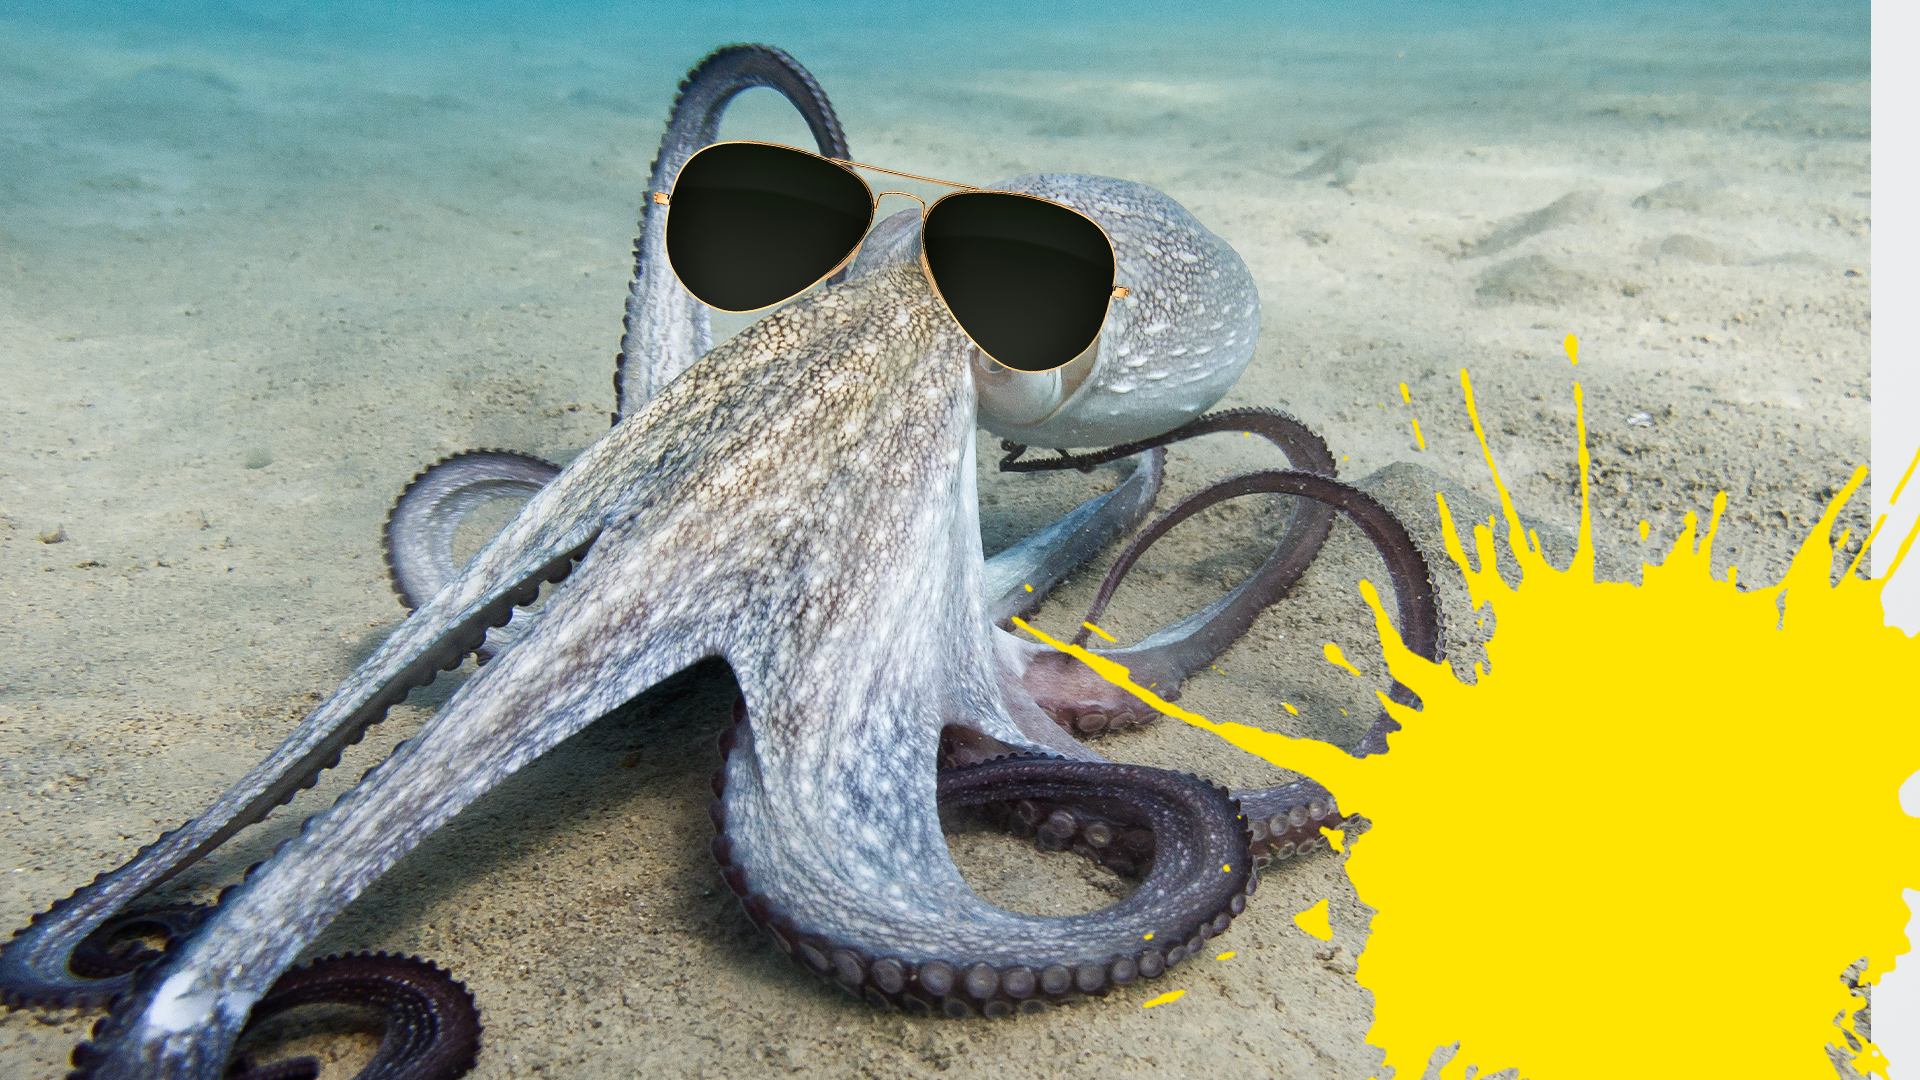 Octopus in sunglasses